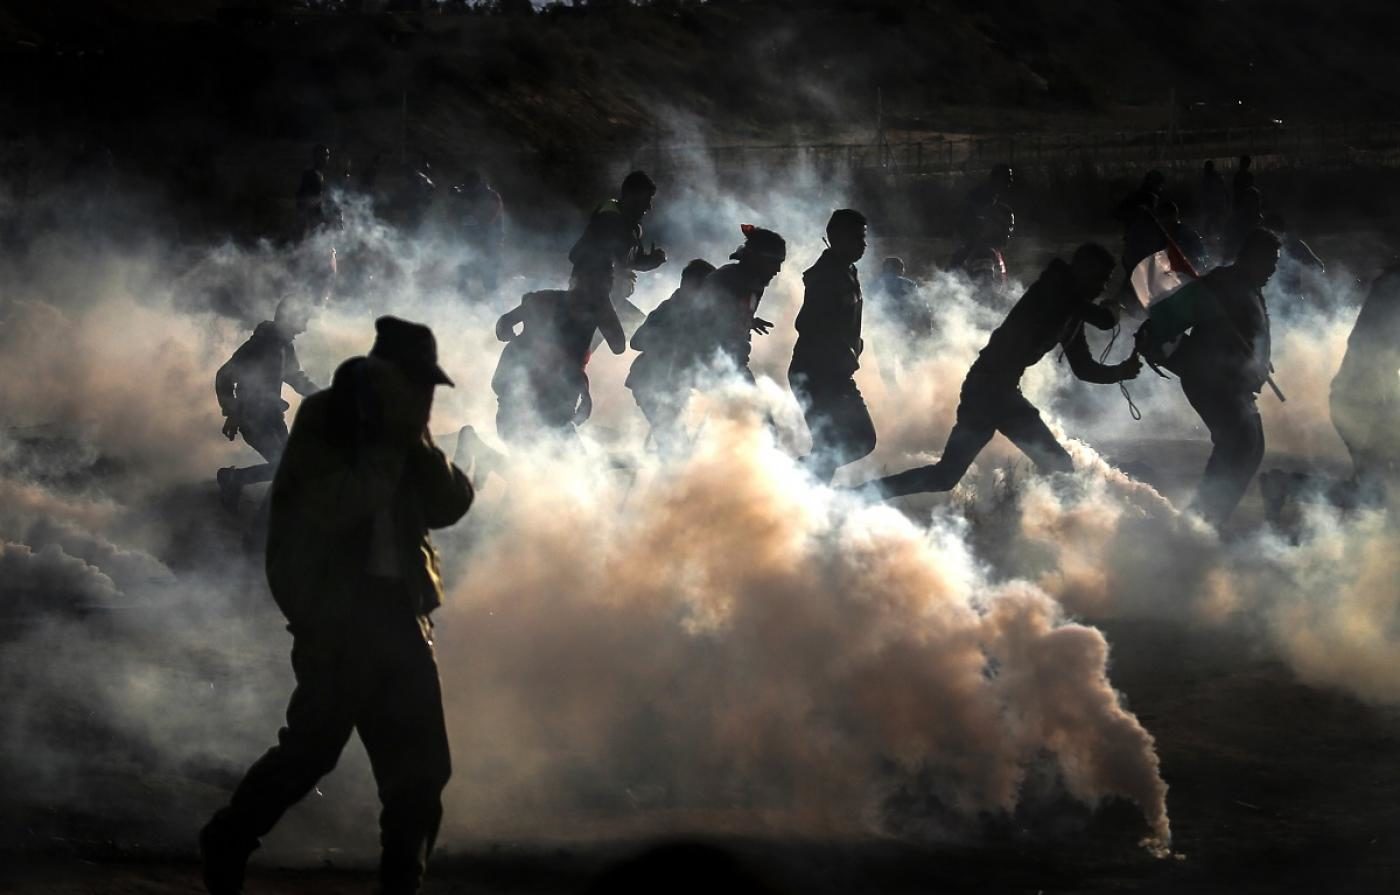 Gaza March of return fence tear gas